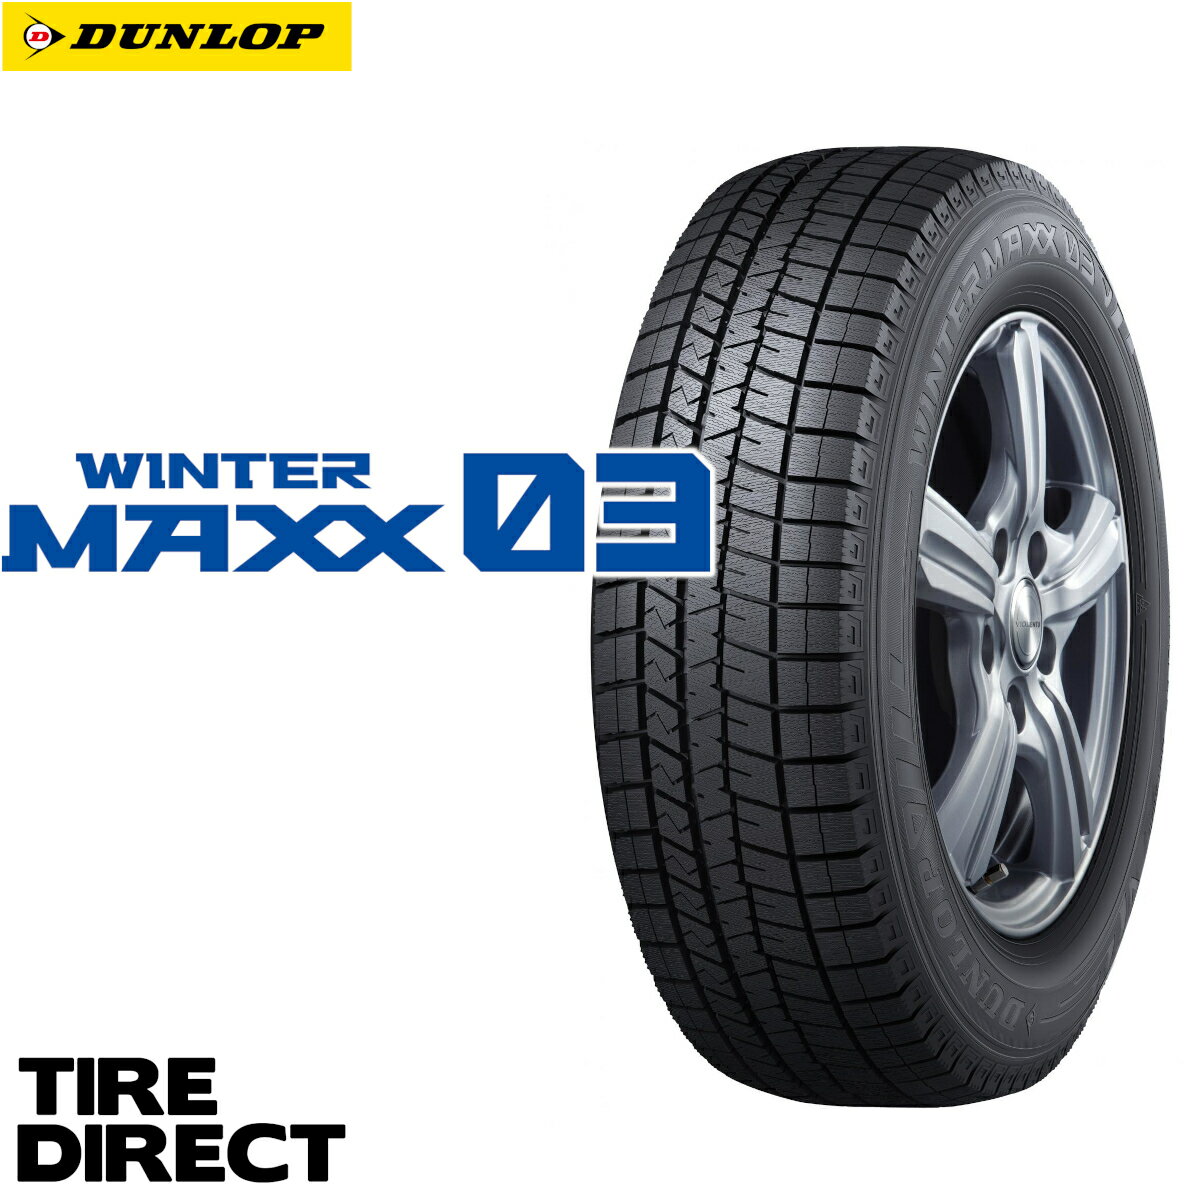 新品 ダンロップ ウインターマックス WM03 225/40R18 92Q XL DUNLOP WINTER MAXX ウィンターマックス 225/40-18 冬タイヤ スタッドレスタイヤ